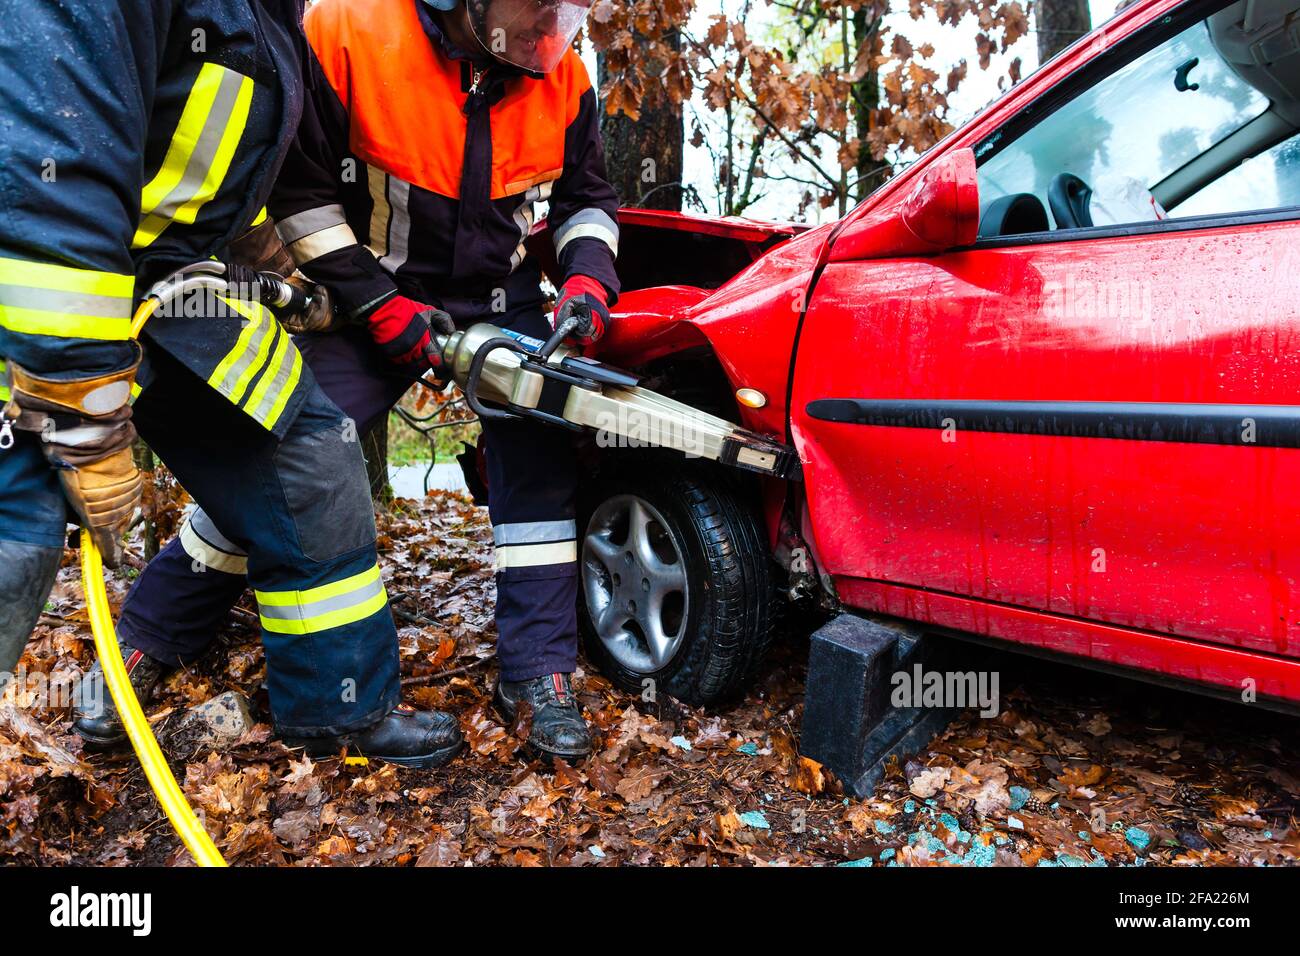 Unfall - Feuerwehr rettet Unfall Opfer eines Autos mit einem hydraulischen Rettungs-tool Stockfoto